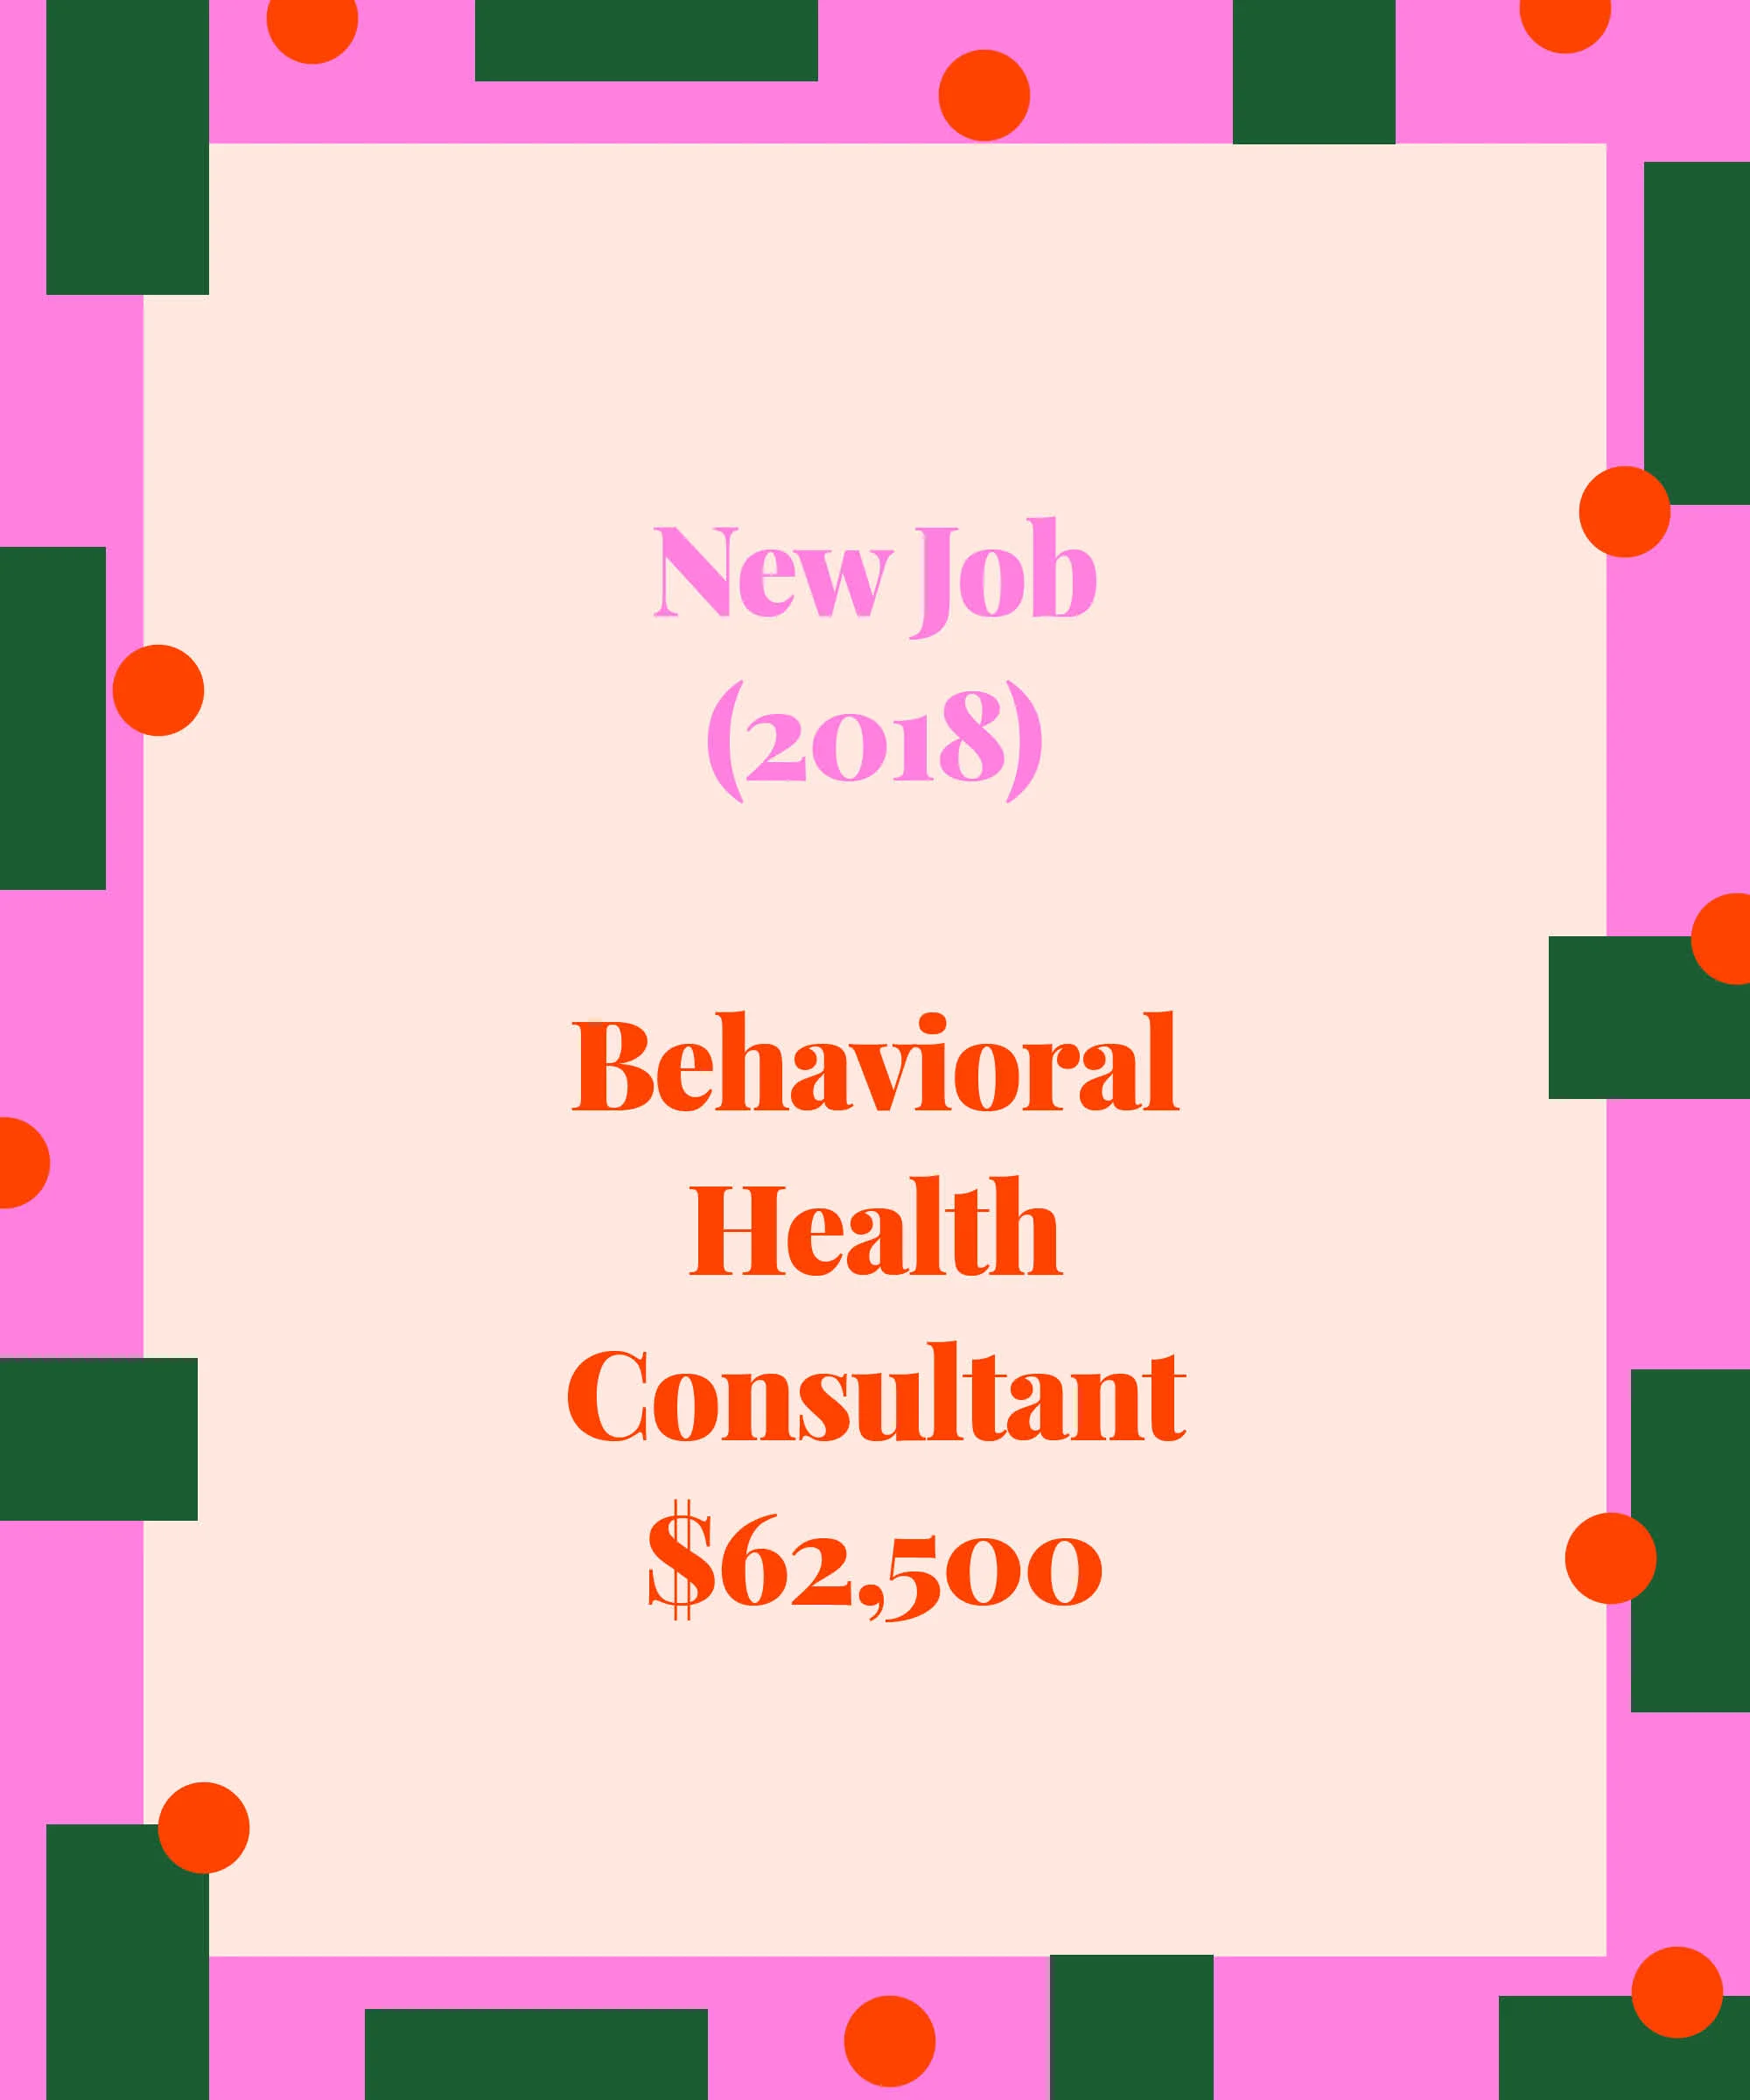 Behavioral Health Consultant,